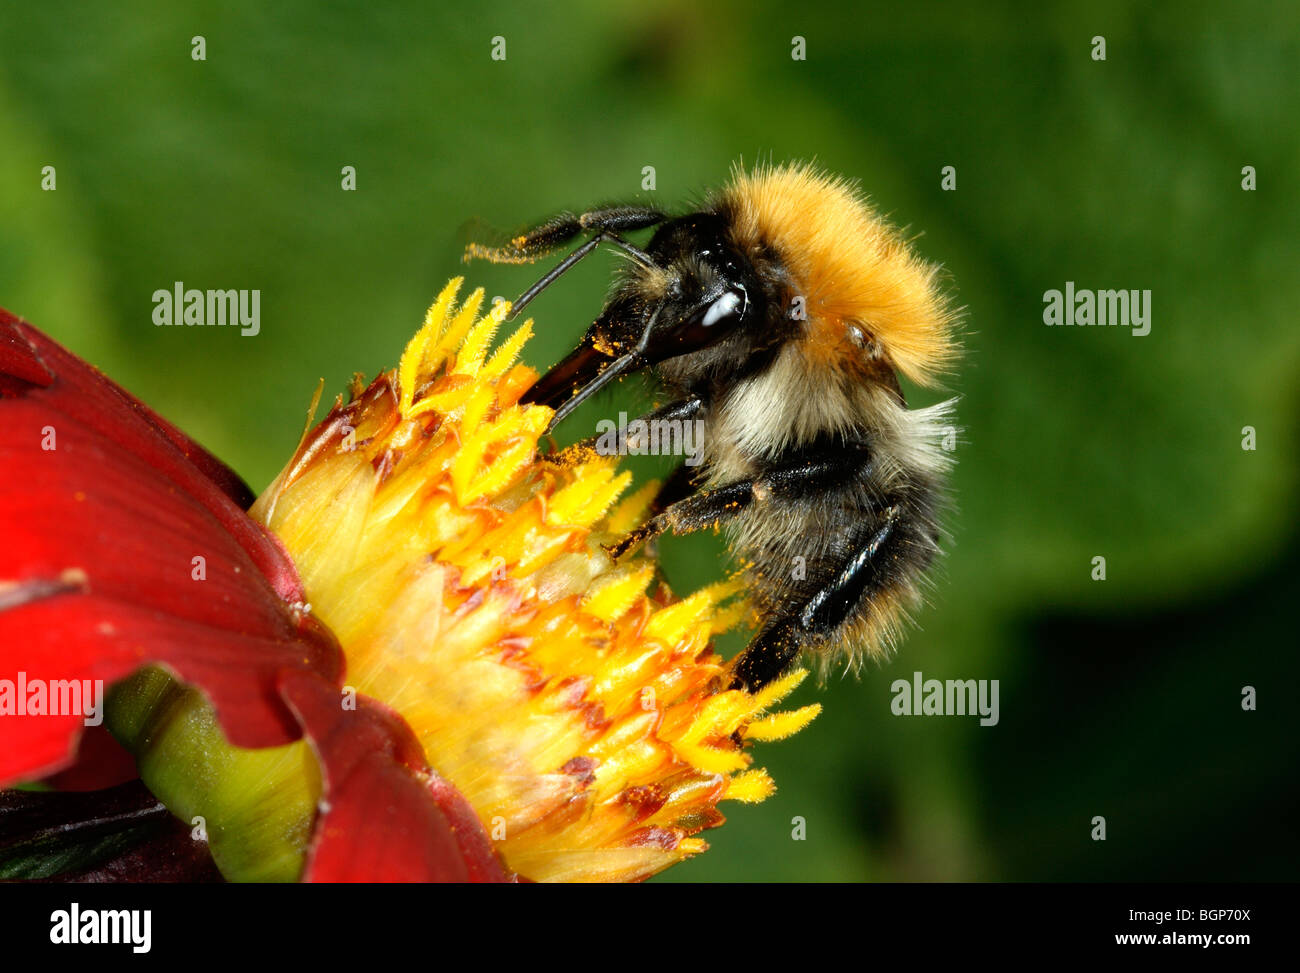 Bumble-bee, close-up. Stock Photo